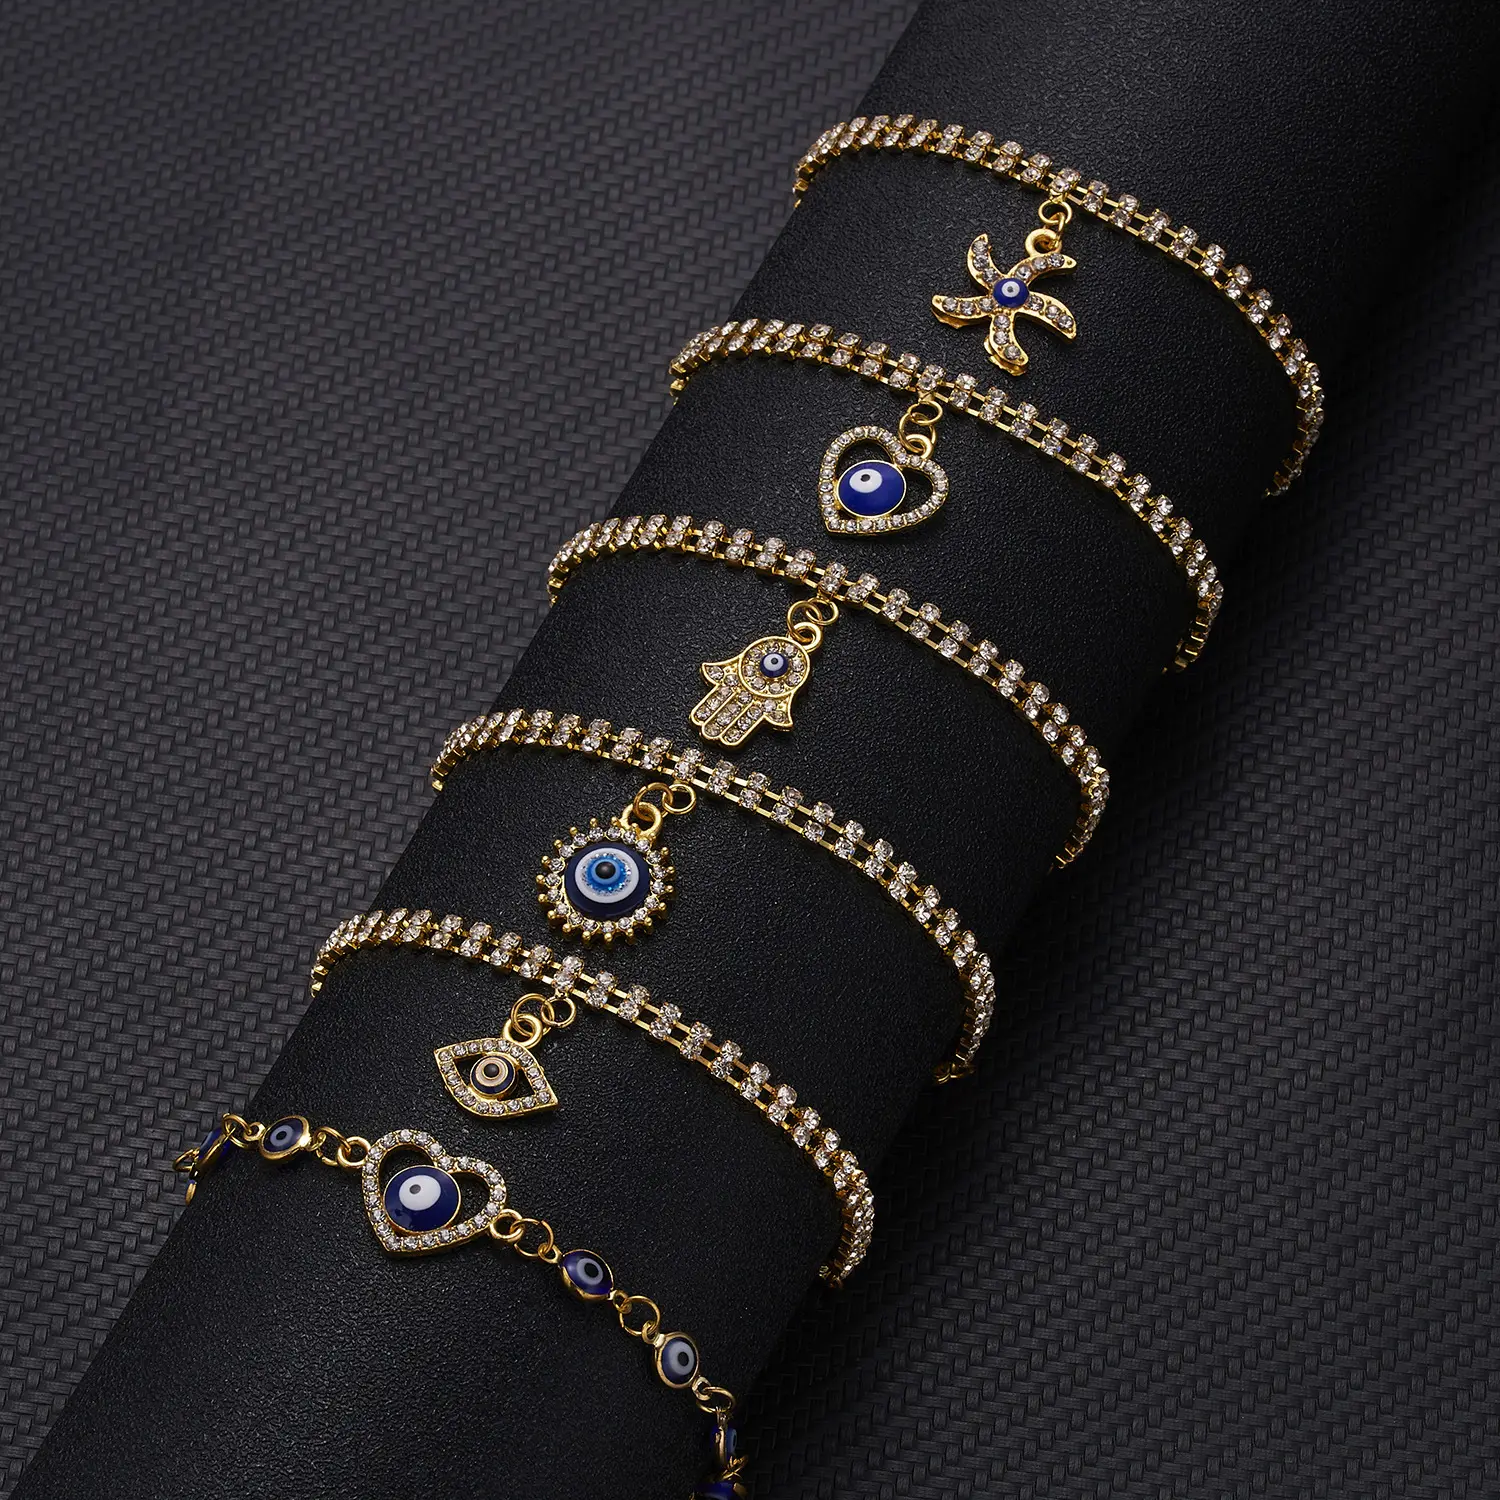 Cuoio placcato oro 18 carati bracciale a catena design gioielli 9 bracciali versare femmes palma geometrica occhi azzurri braccialetto di cristallo